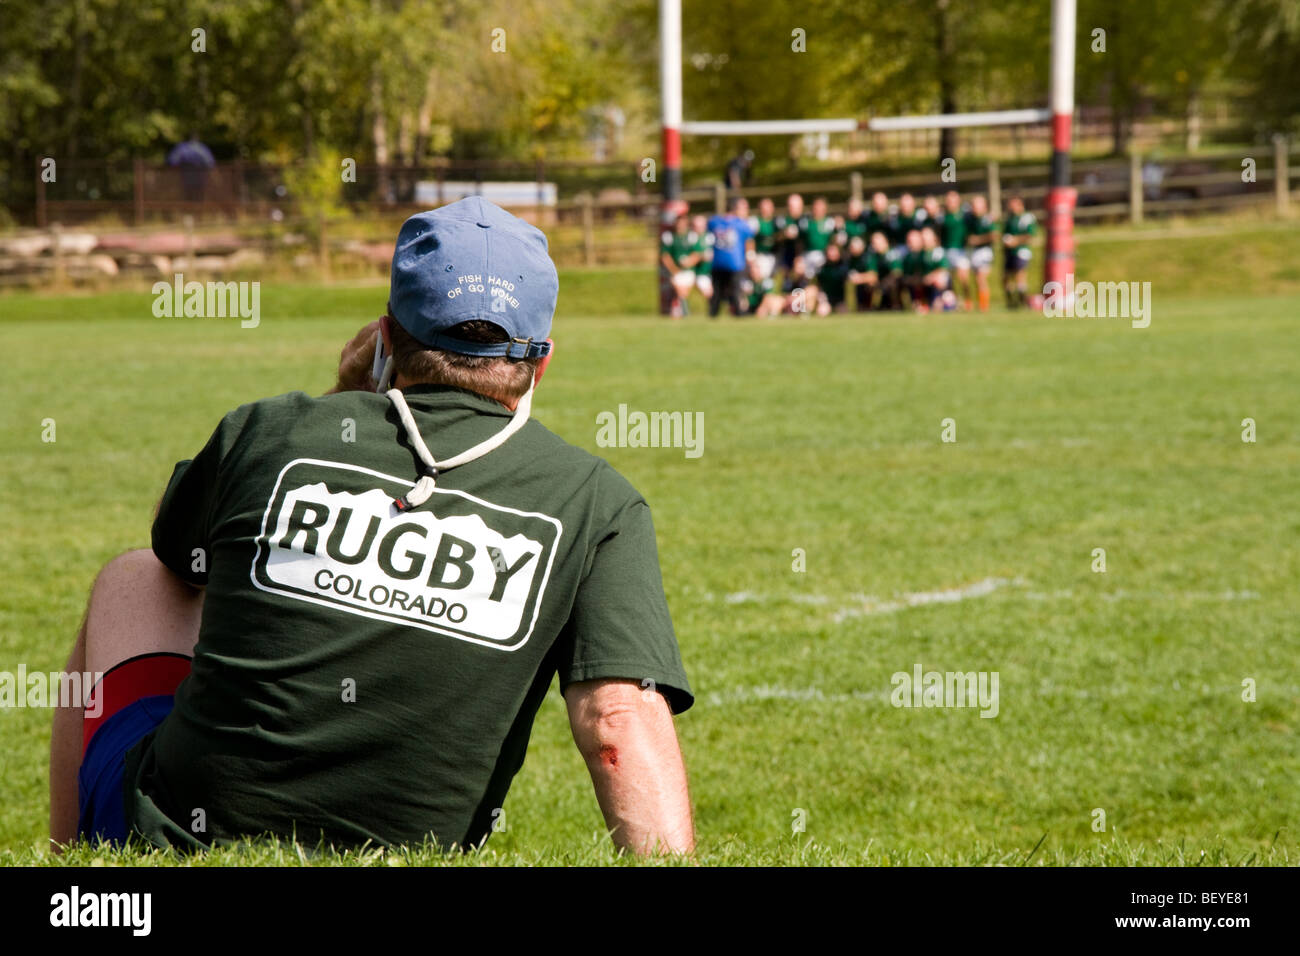 Aspen Colorado 42. jährlichen Ruggerfest. Zuschauer-Uhren als Rugby-Team stellt für ein Gruppenbild. Stockfoto